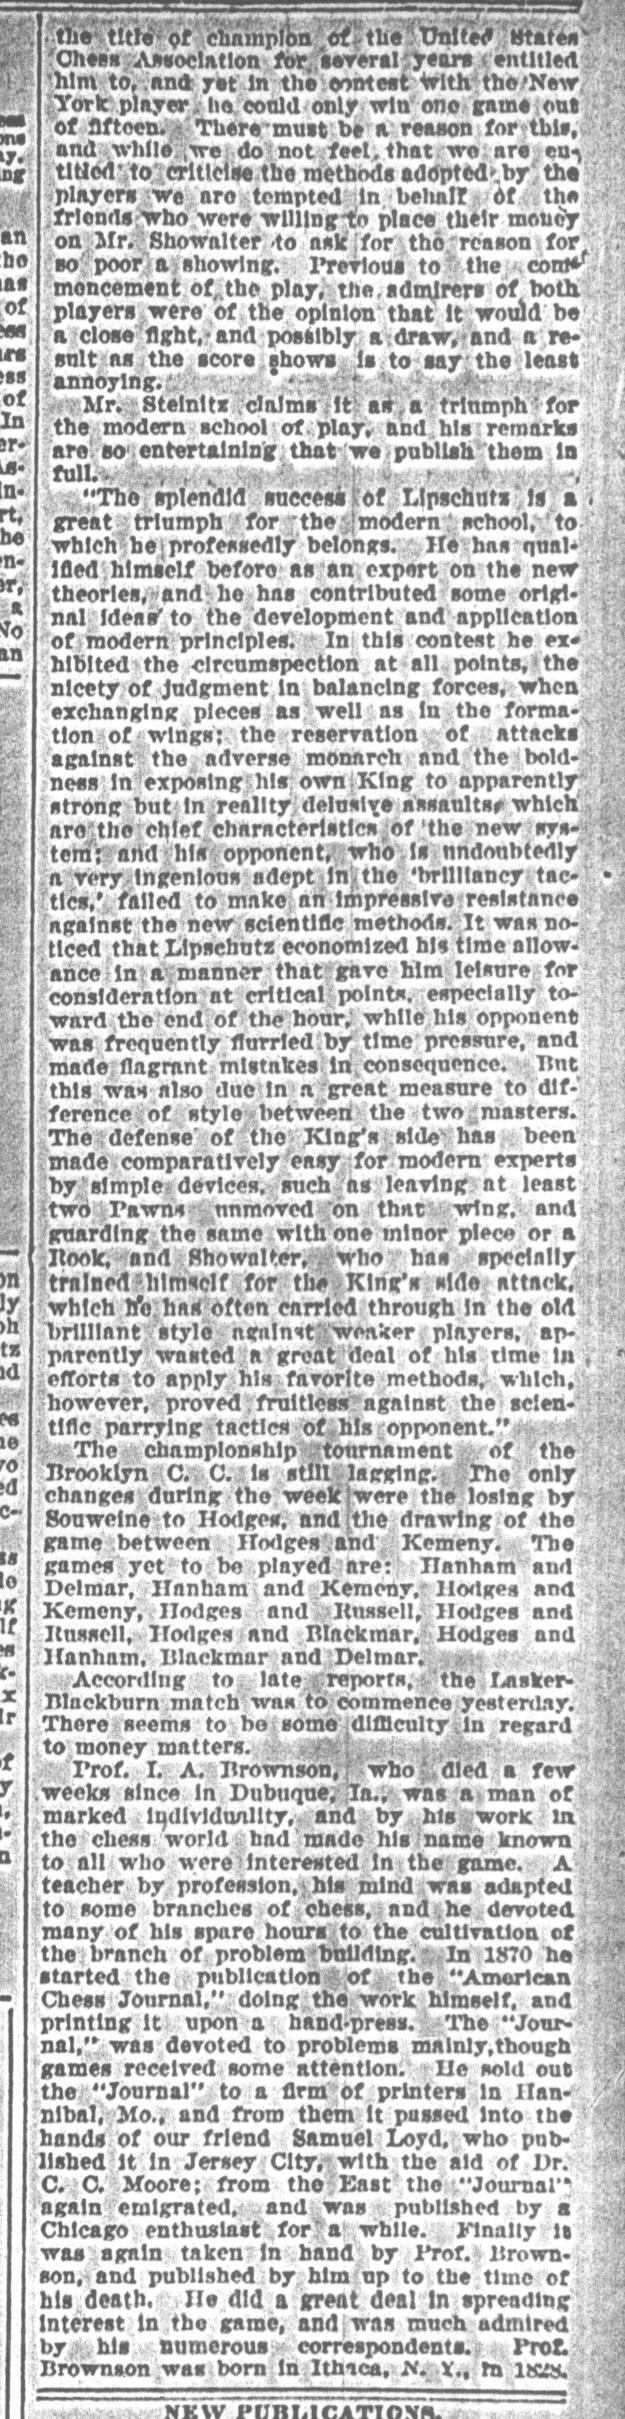 1892.05.28-03 Brooklyn Daily Standard-Union.jpg